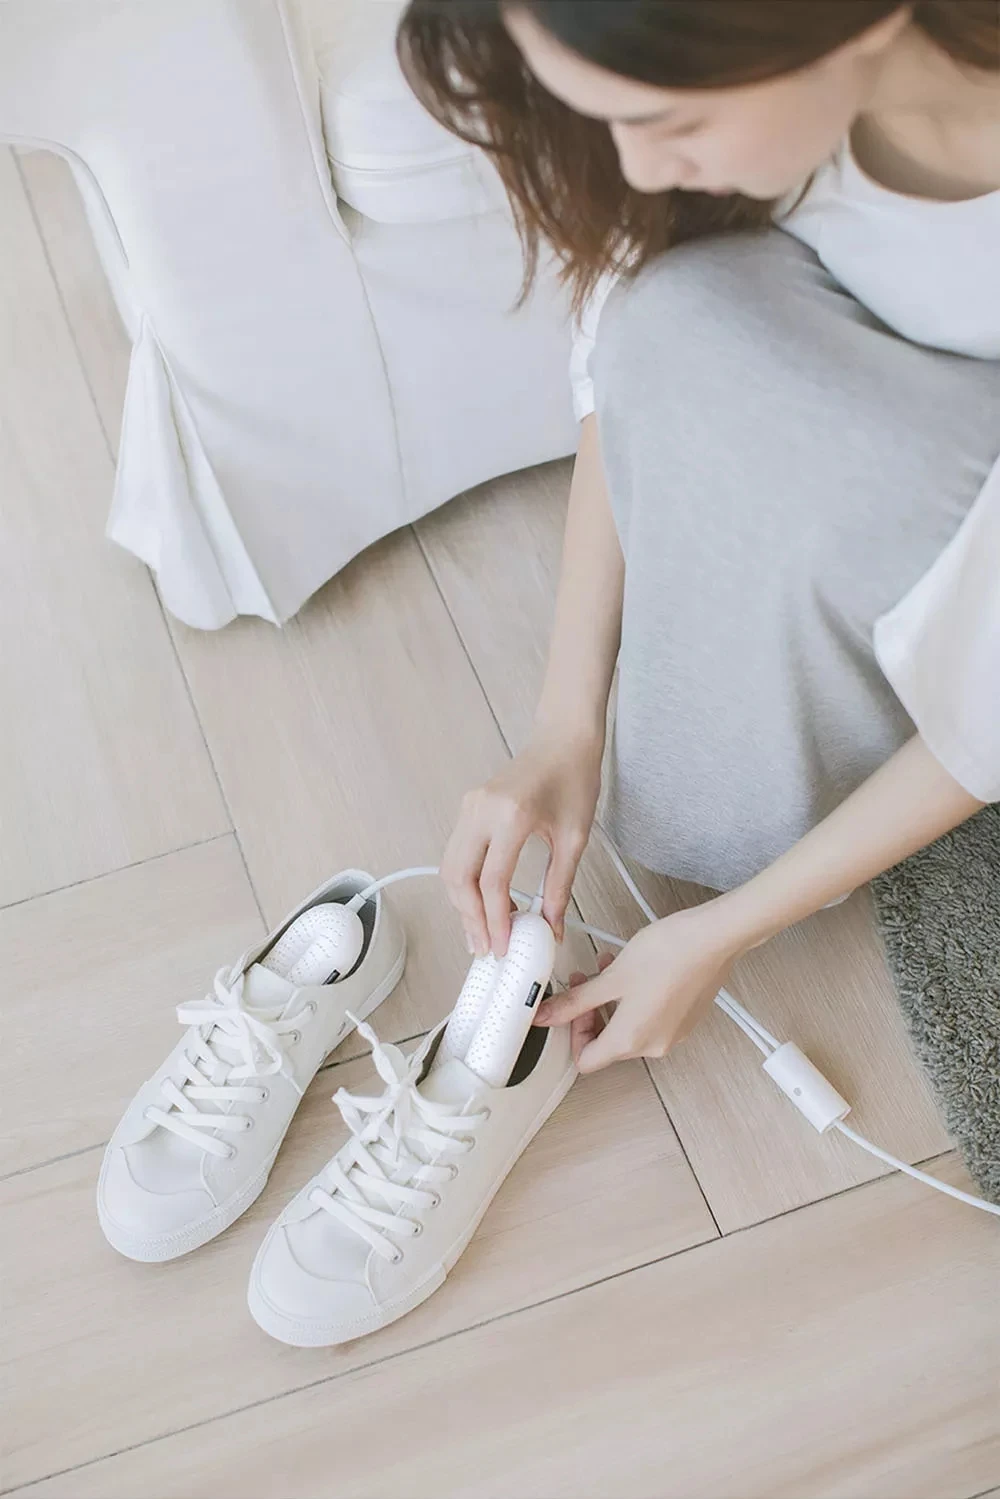 Xiaomi Sothing сушилка для обуви Защита ног ботинок дезодорант осушающее устройство зимняя обувь сушилка нагреватель с UK/US/EU разъем